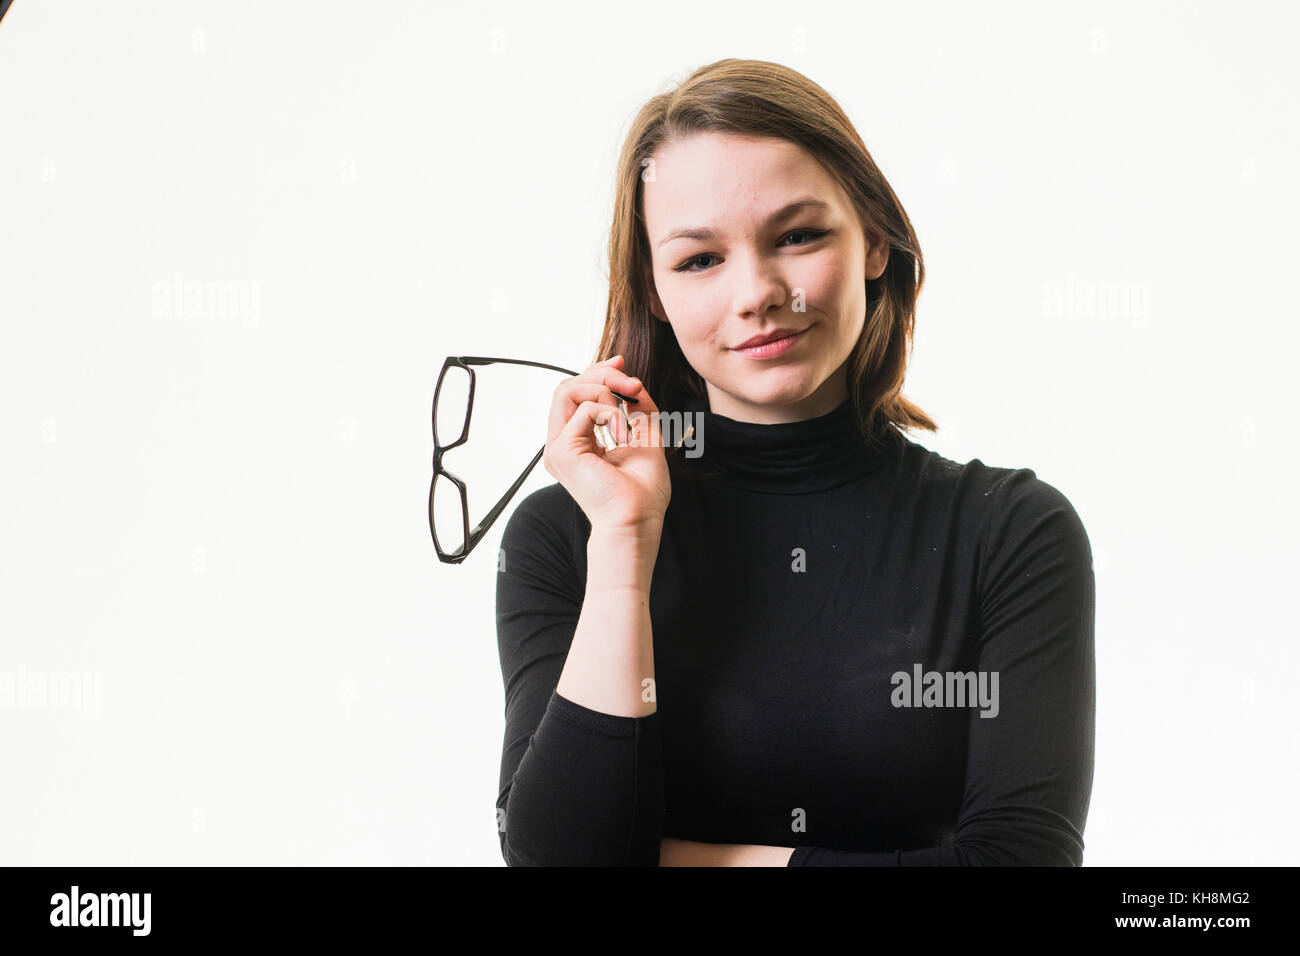 Intelligenz: Eine junge Braunhaarige kaukasischen Jugendmädchen trägt einen schwarzen rollkragen pullover und halten ein Paar schwarze Hornbrille Stockfoto